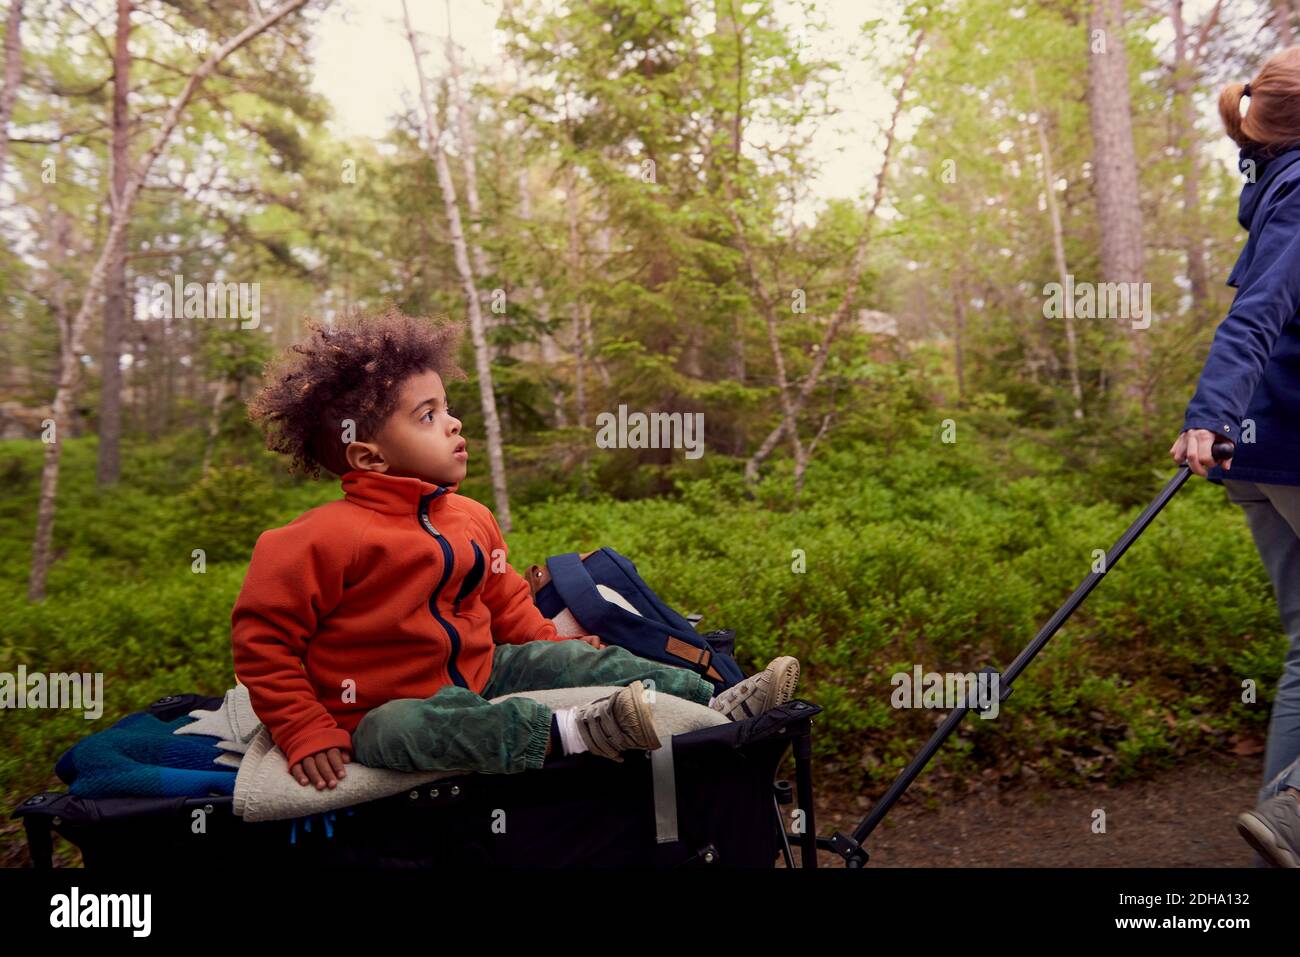 La mère tire le garçon assis sur le chariot de camping contre les arbres à l'intérieur forêt Banque D'Images